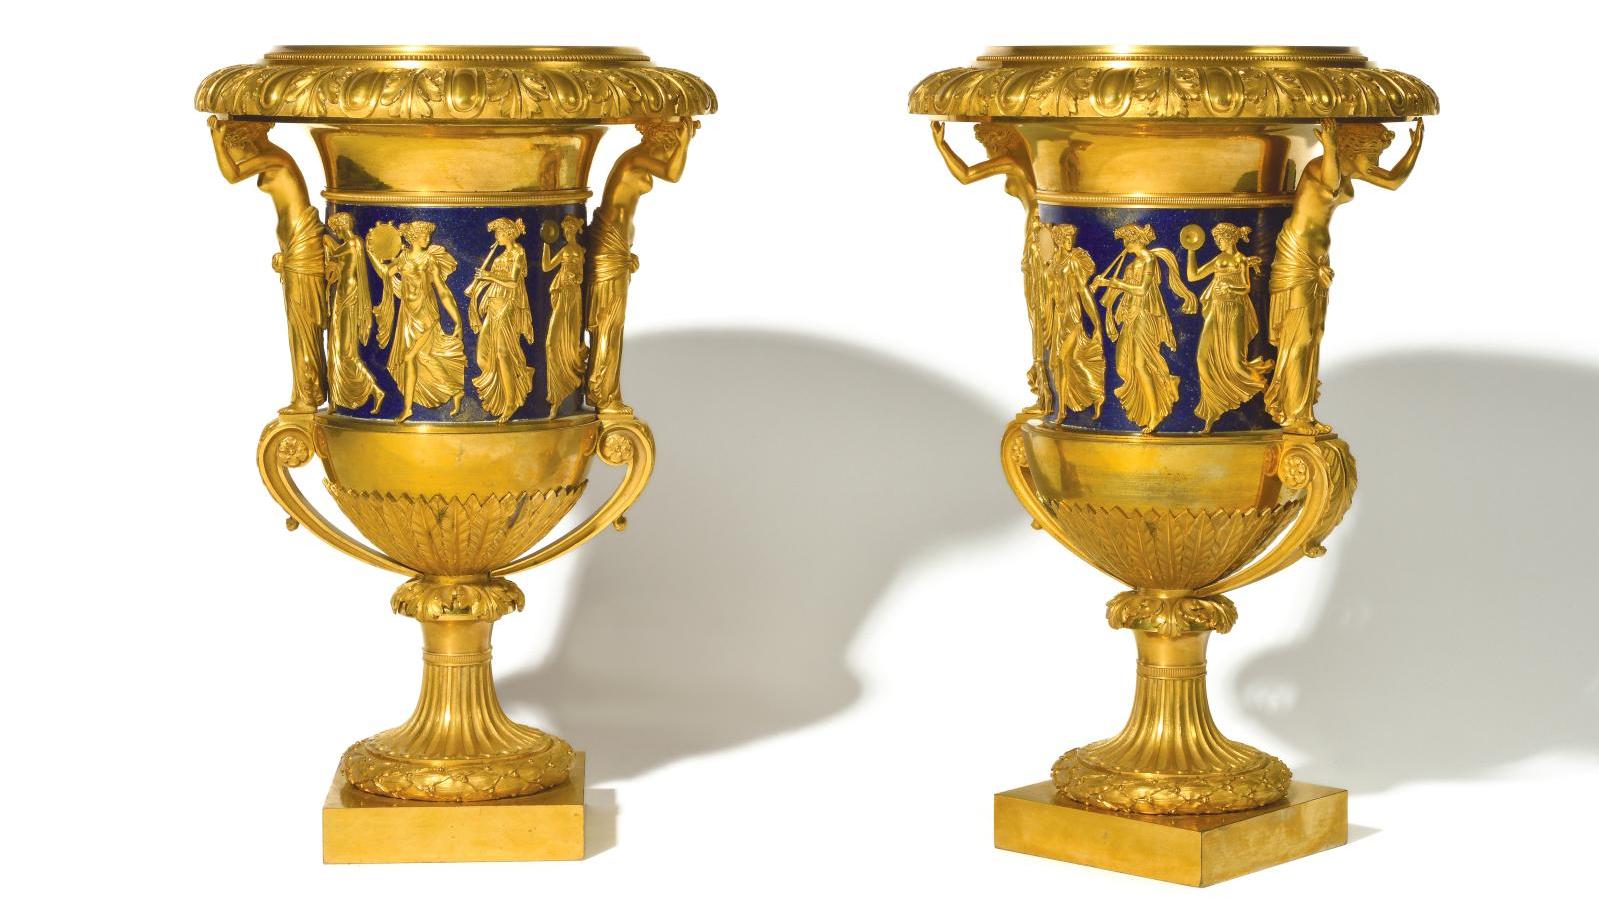 Fin du XVIIIe-début du XIXe siècle, vers 1800, paire de vases en bronze doré et laqué... De la Haute Époque au néoclassicisme